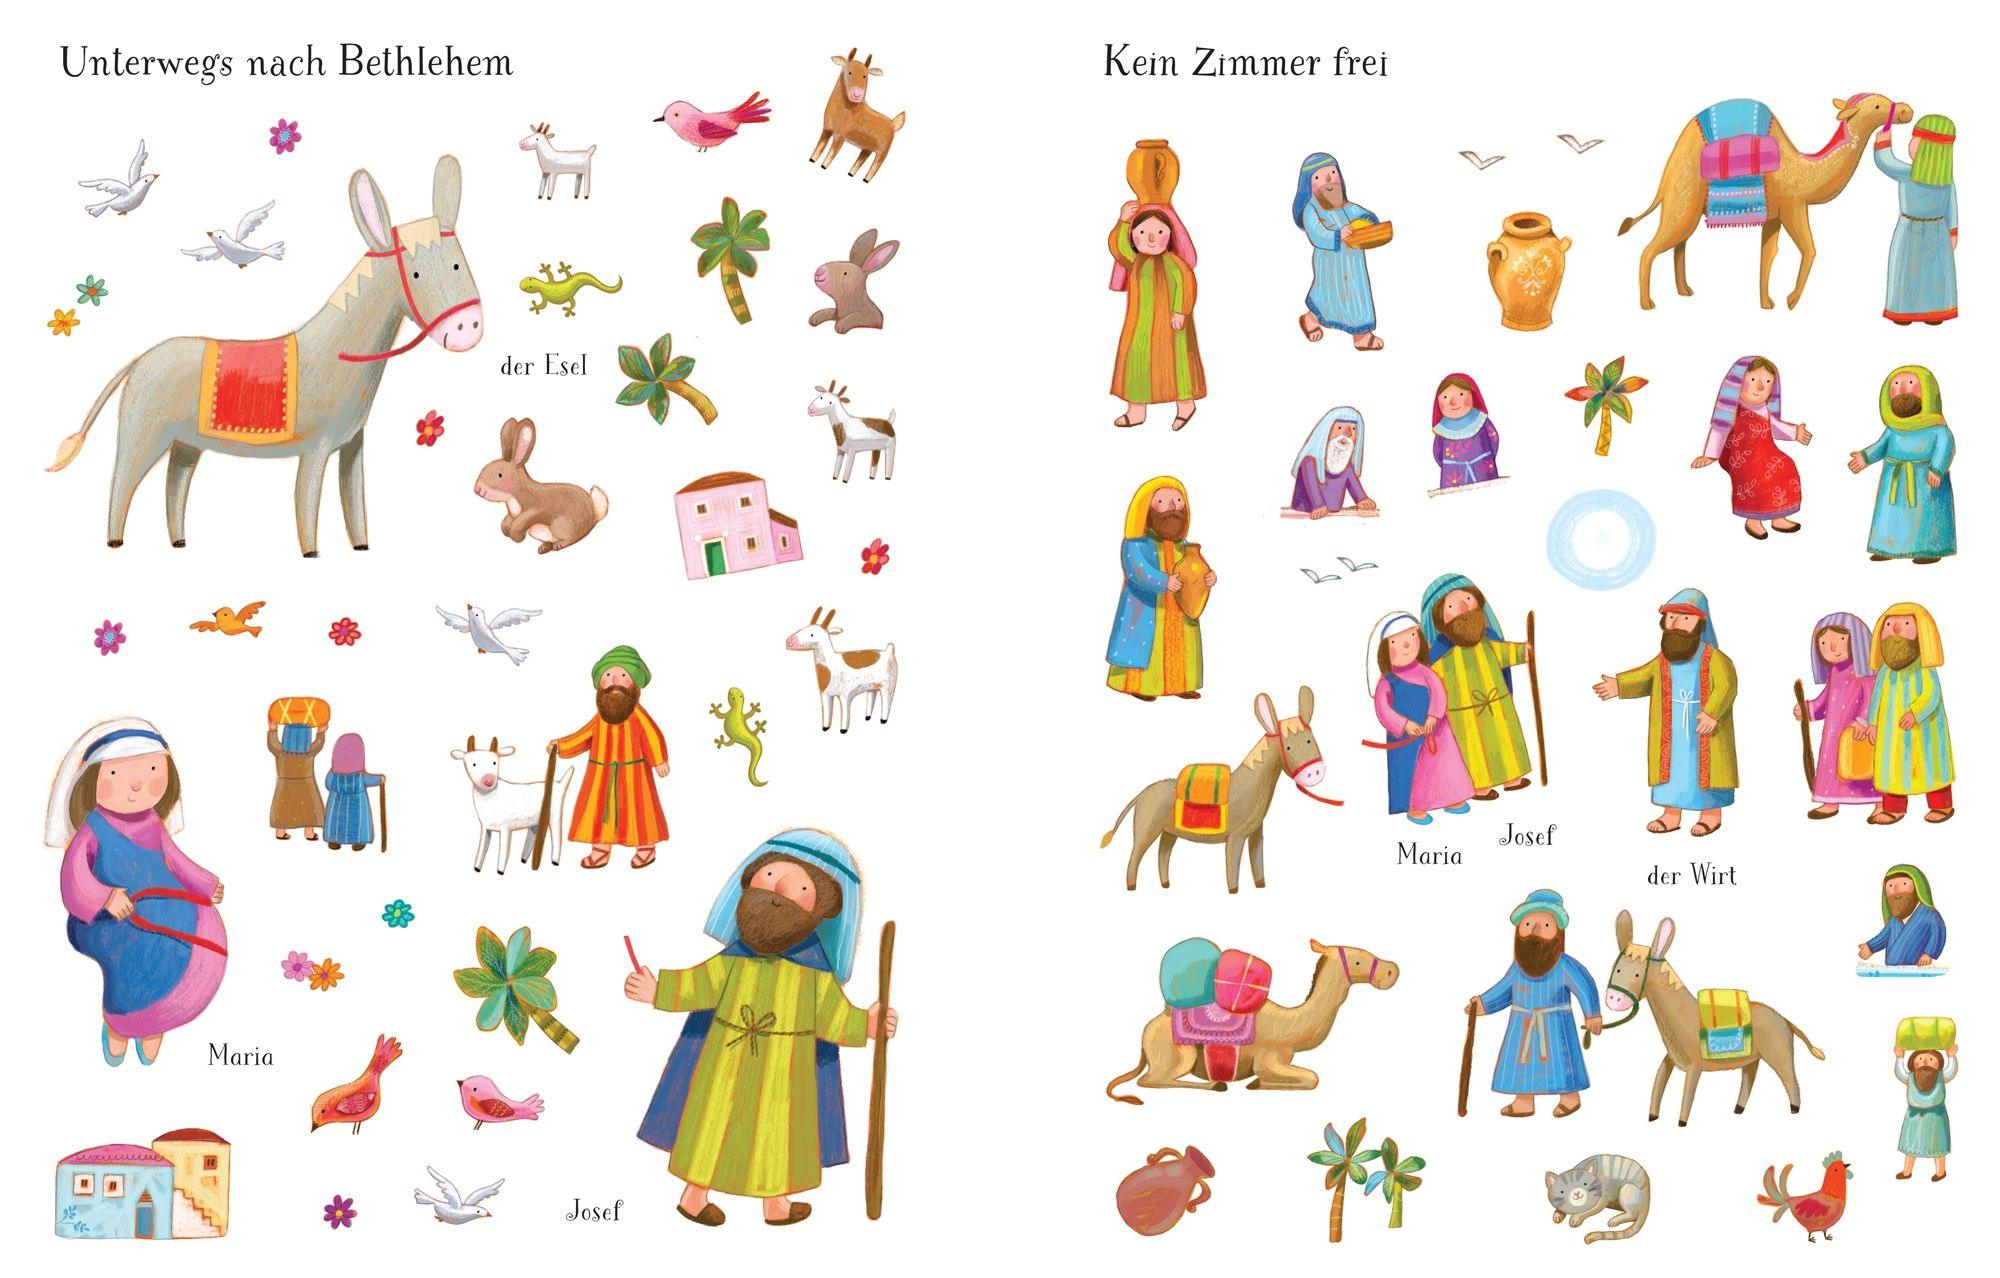 Mein erstes Stickerbuch - Die Weihnachtsgeschichte - mit über 230 Stickern - 978-1-78232-699-1 kunstundspiel 